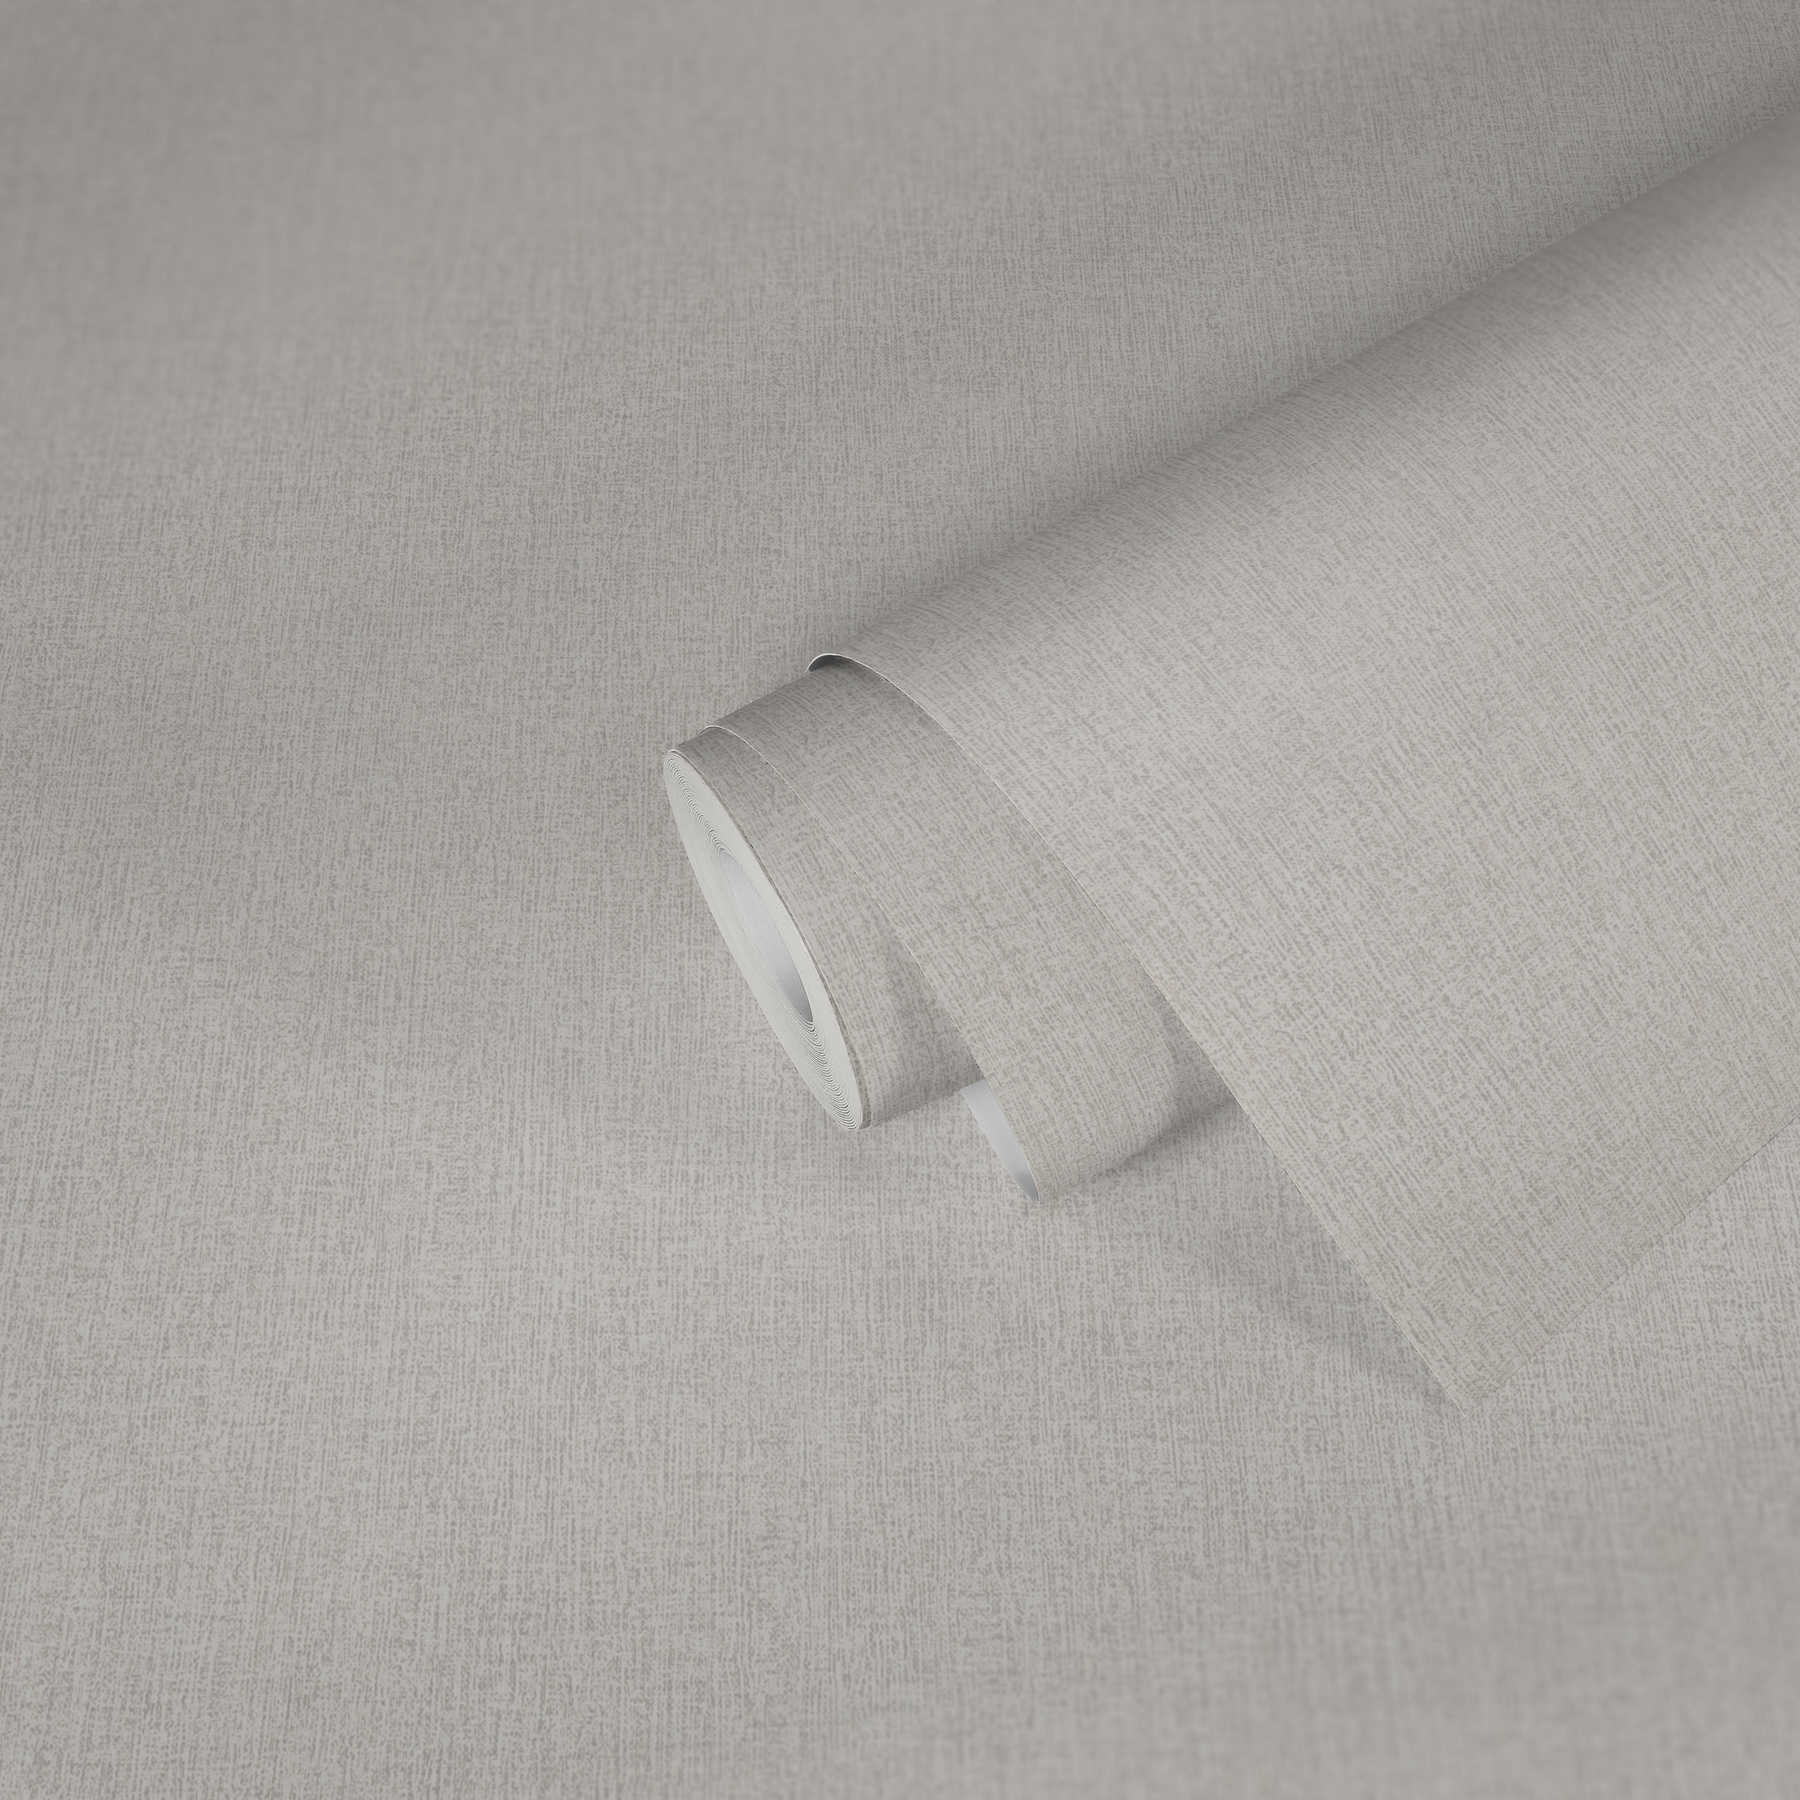             Einfarbige Tapete meliert, mit Gewebestruktur – Weiß, Grau
        